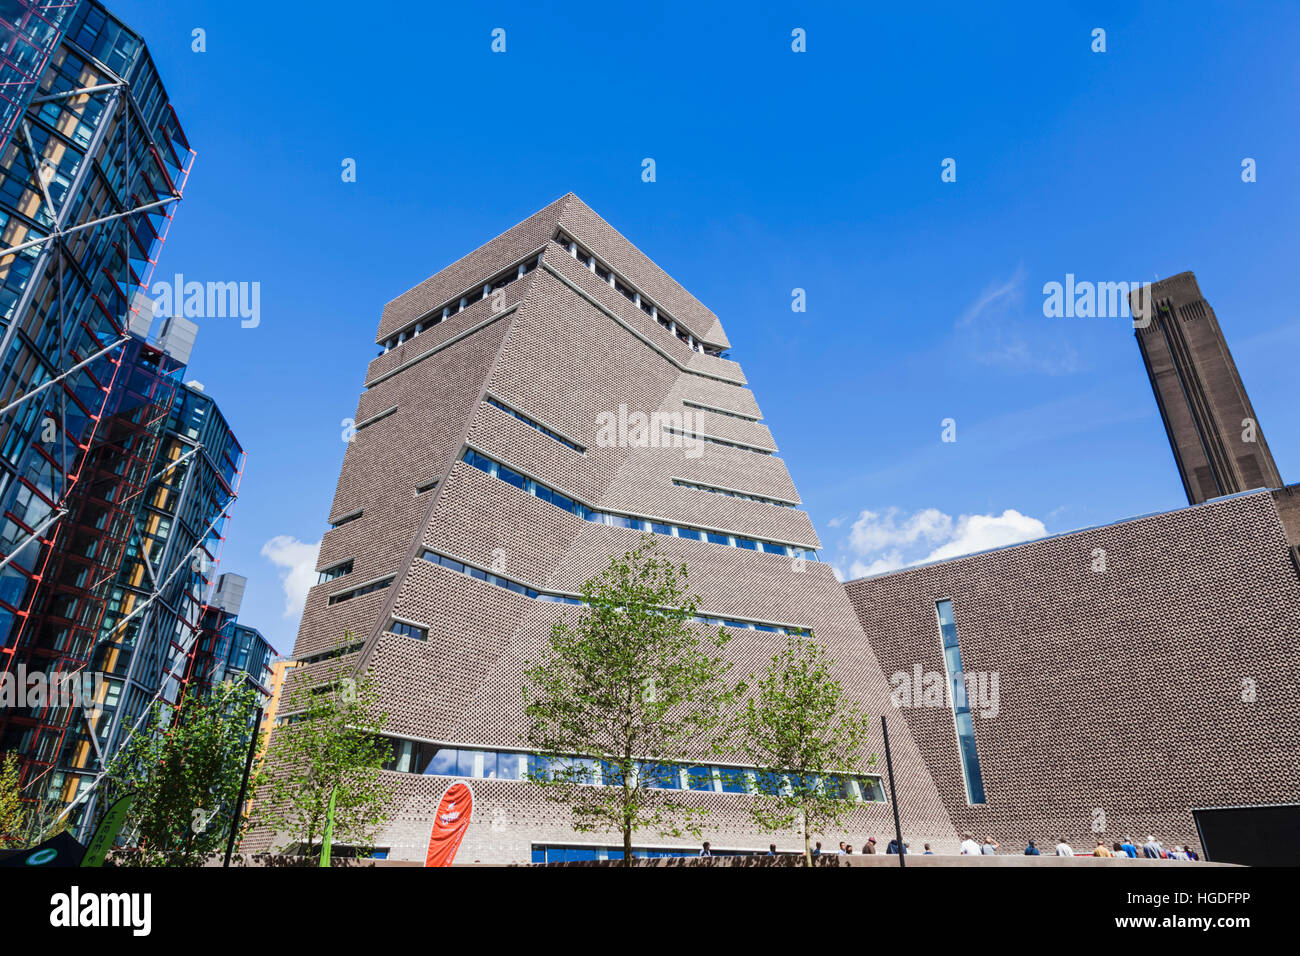 Inghilterra, Londra, Tate Modern, la casa di interruttore Foto Stock